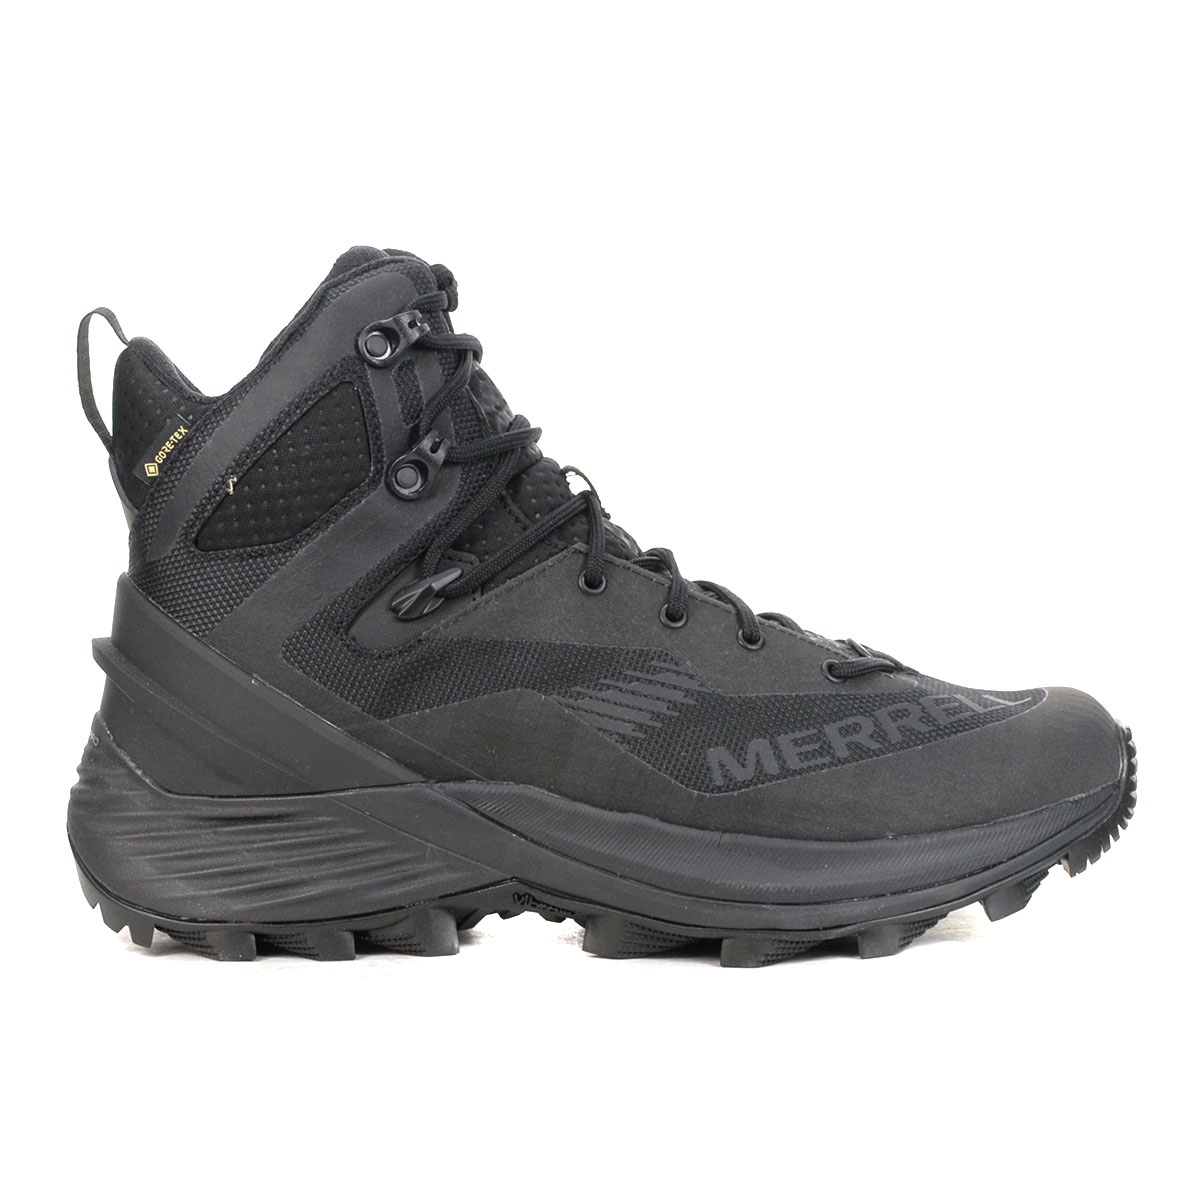 Merrell Men's Rogue Tactical Black Gore-Tex Tactical Boots J005251 ...